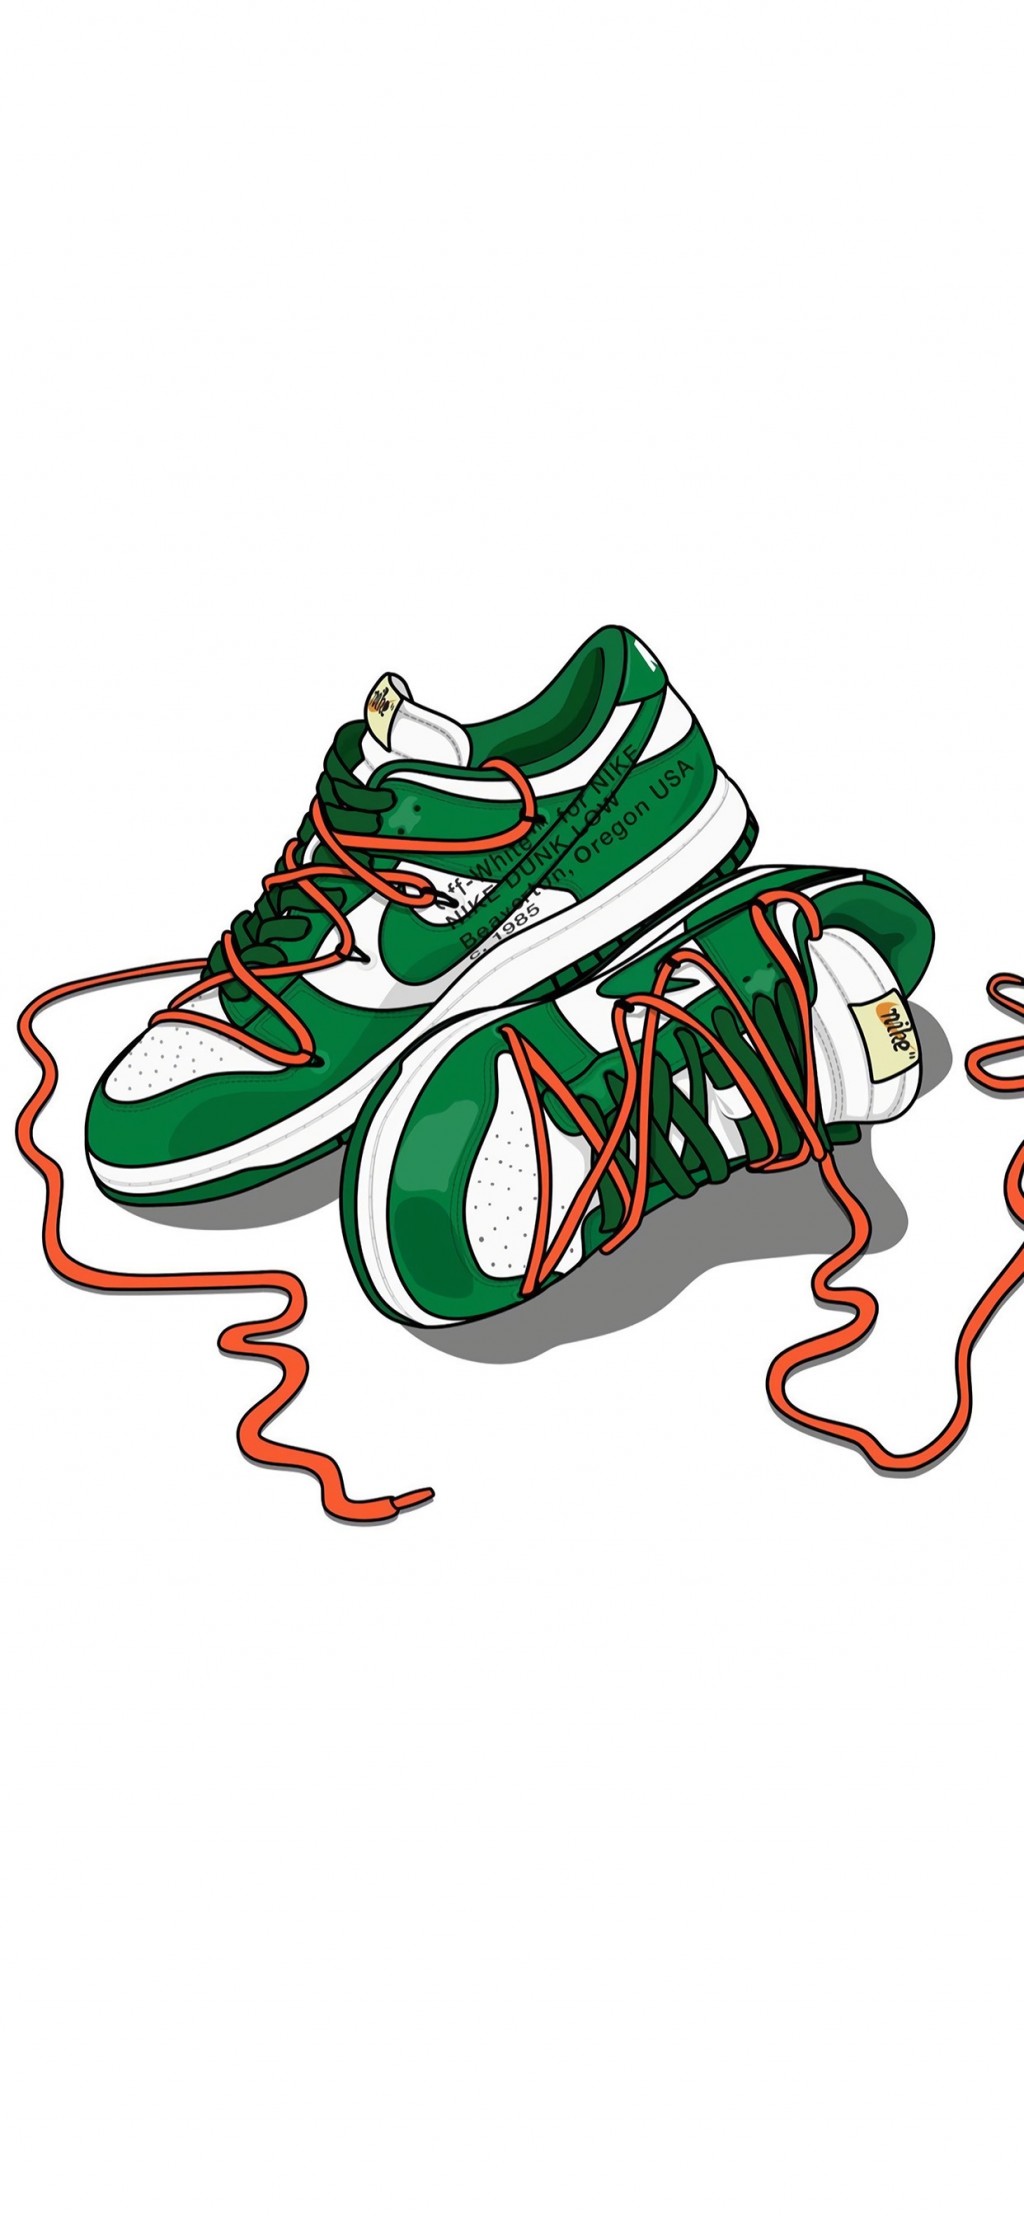 耐克时尚运动鞋系列插画手机壁纸